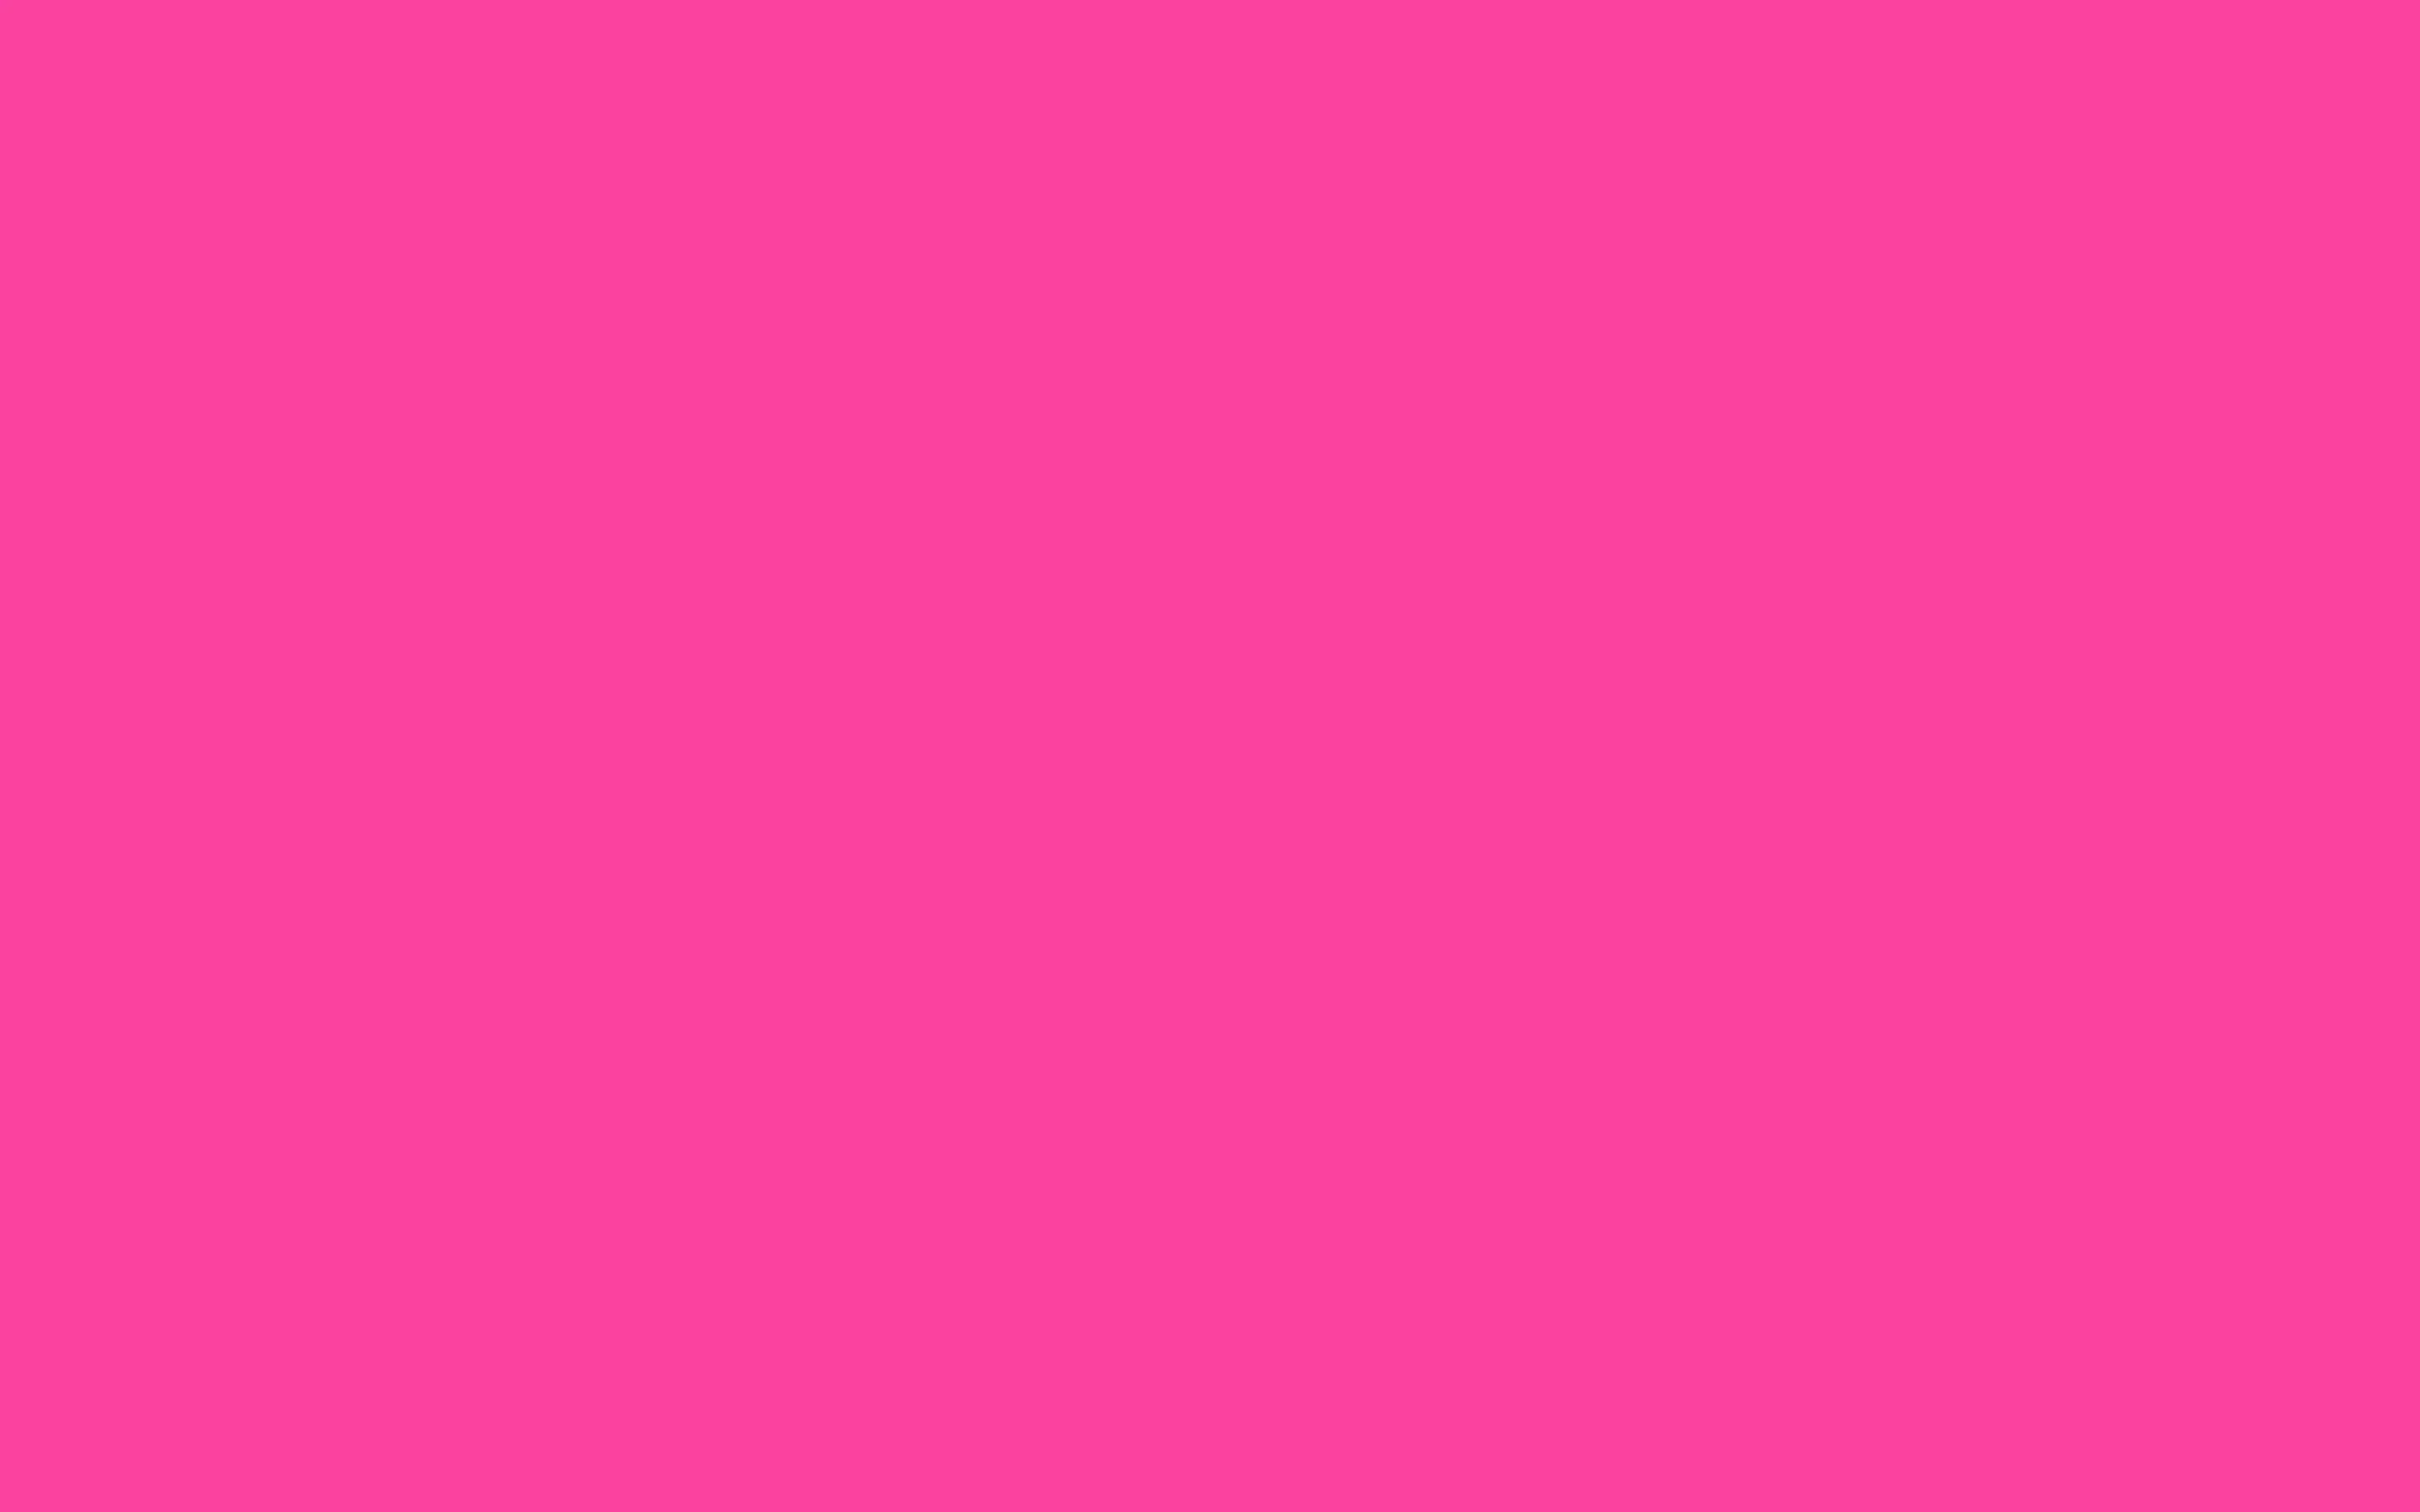 Цвет нат. Ламинат Falquon Colorita 6120. U337 st9 фуксия розовая. NCS s3050-r20b. Baker Miller Pink.